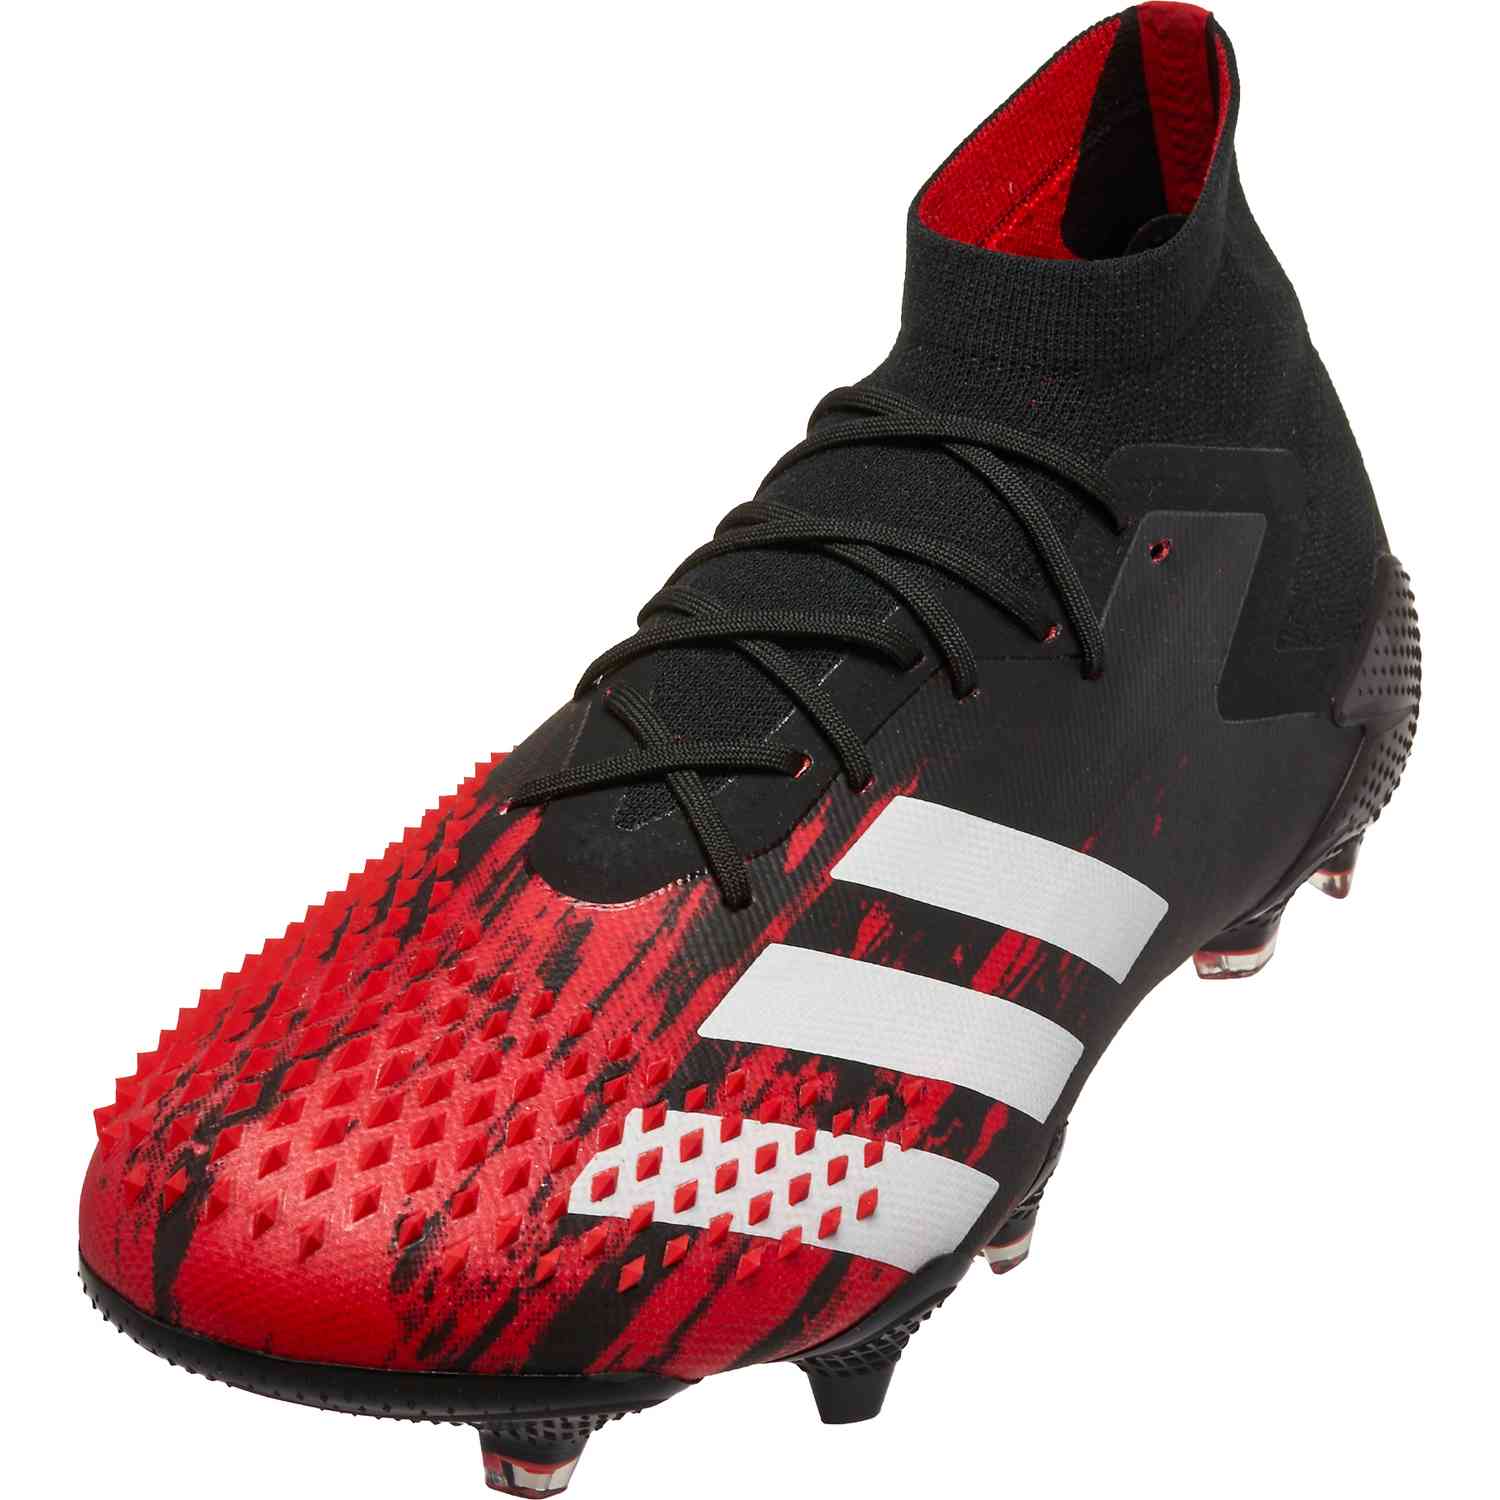 botas de futbol adidas predator